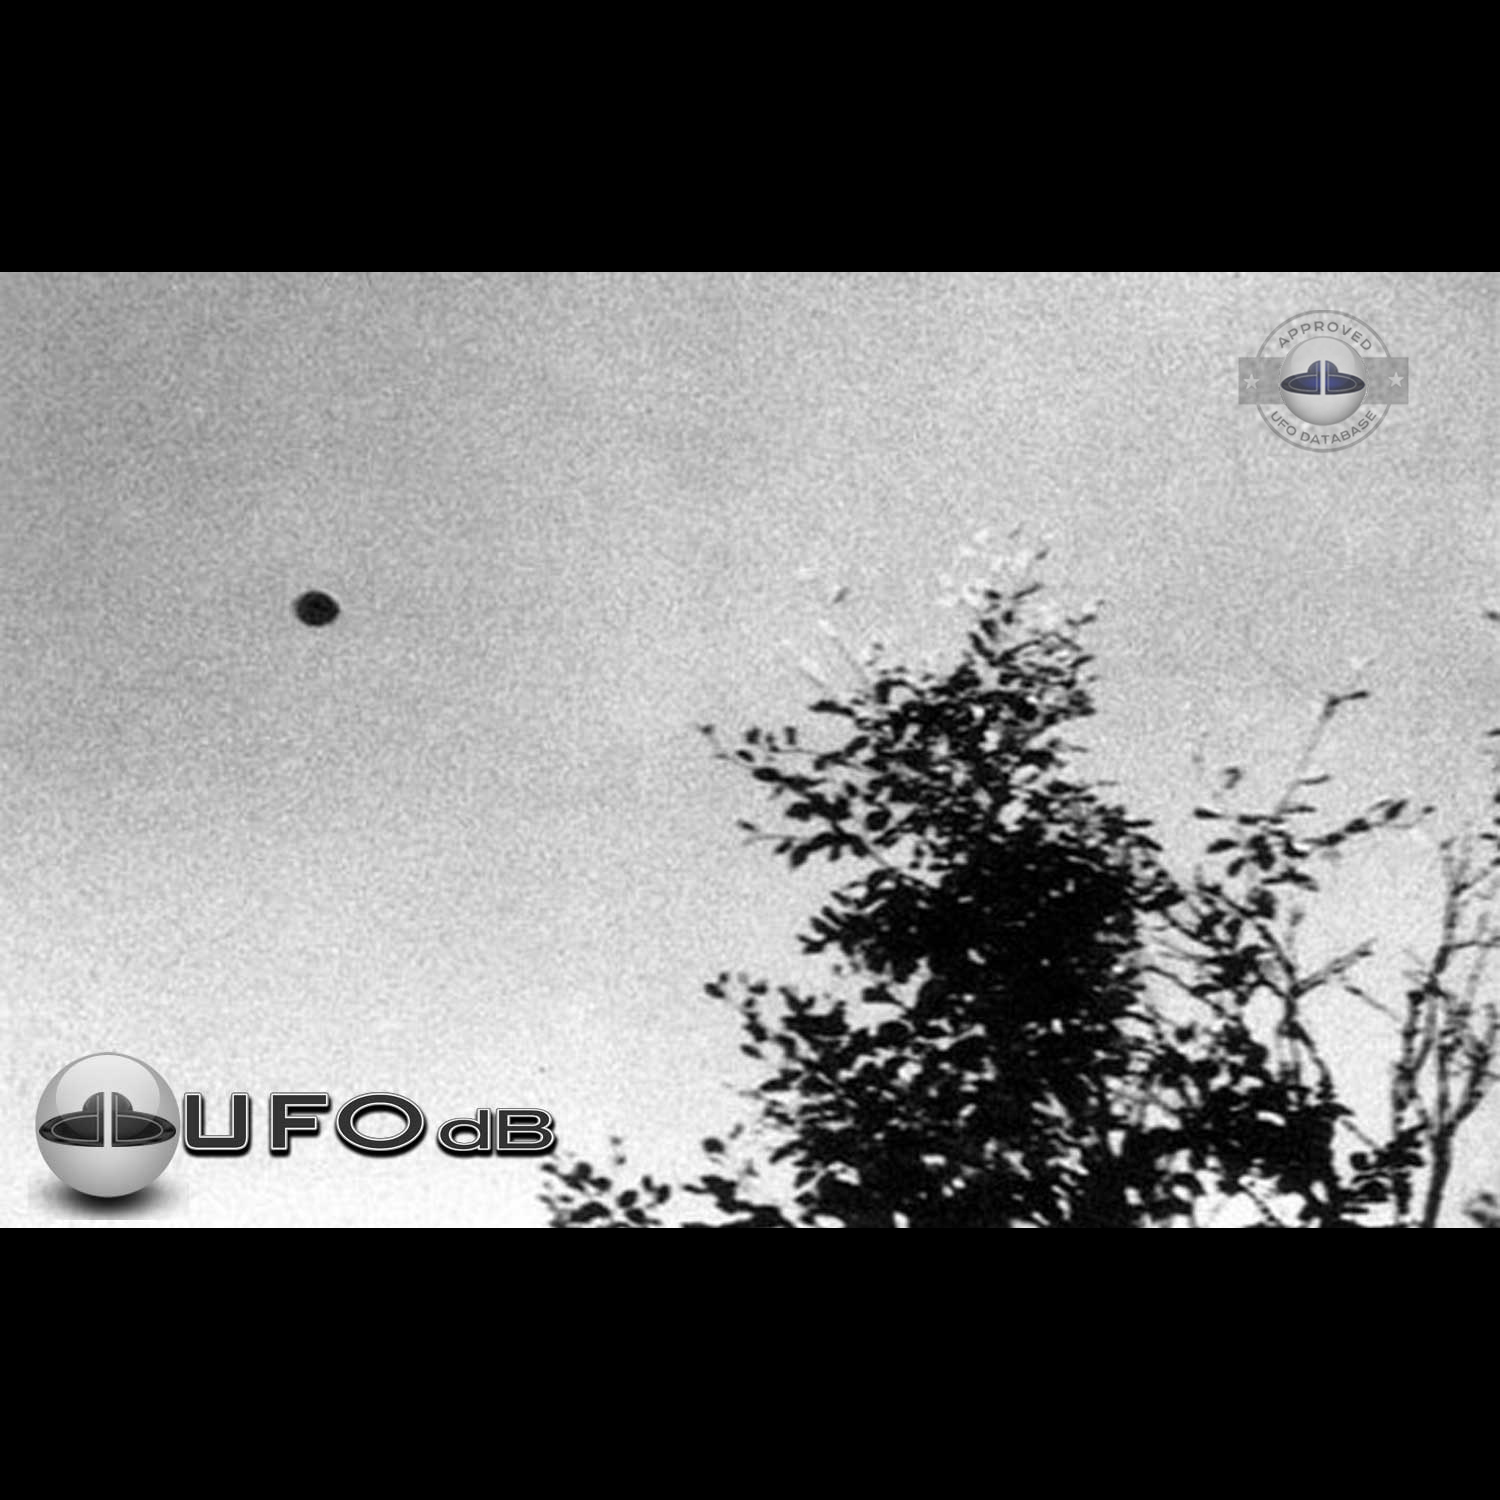 UFO picture taken by Andre Fregnale around lake Chauvet in Picherande UFO Picture #71-1